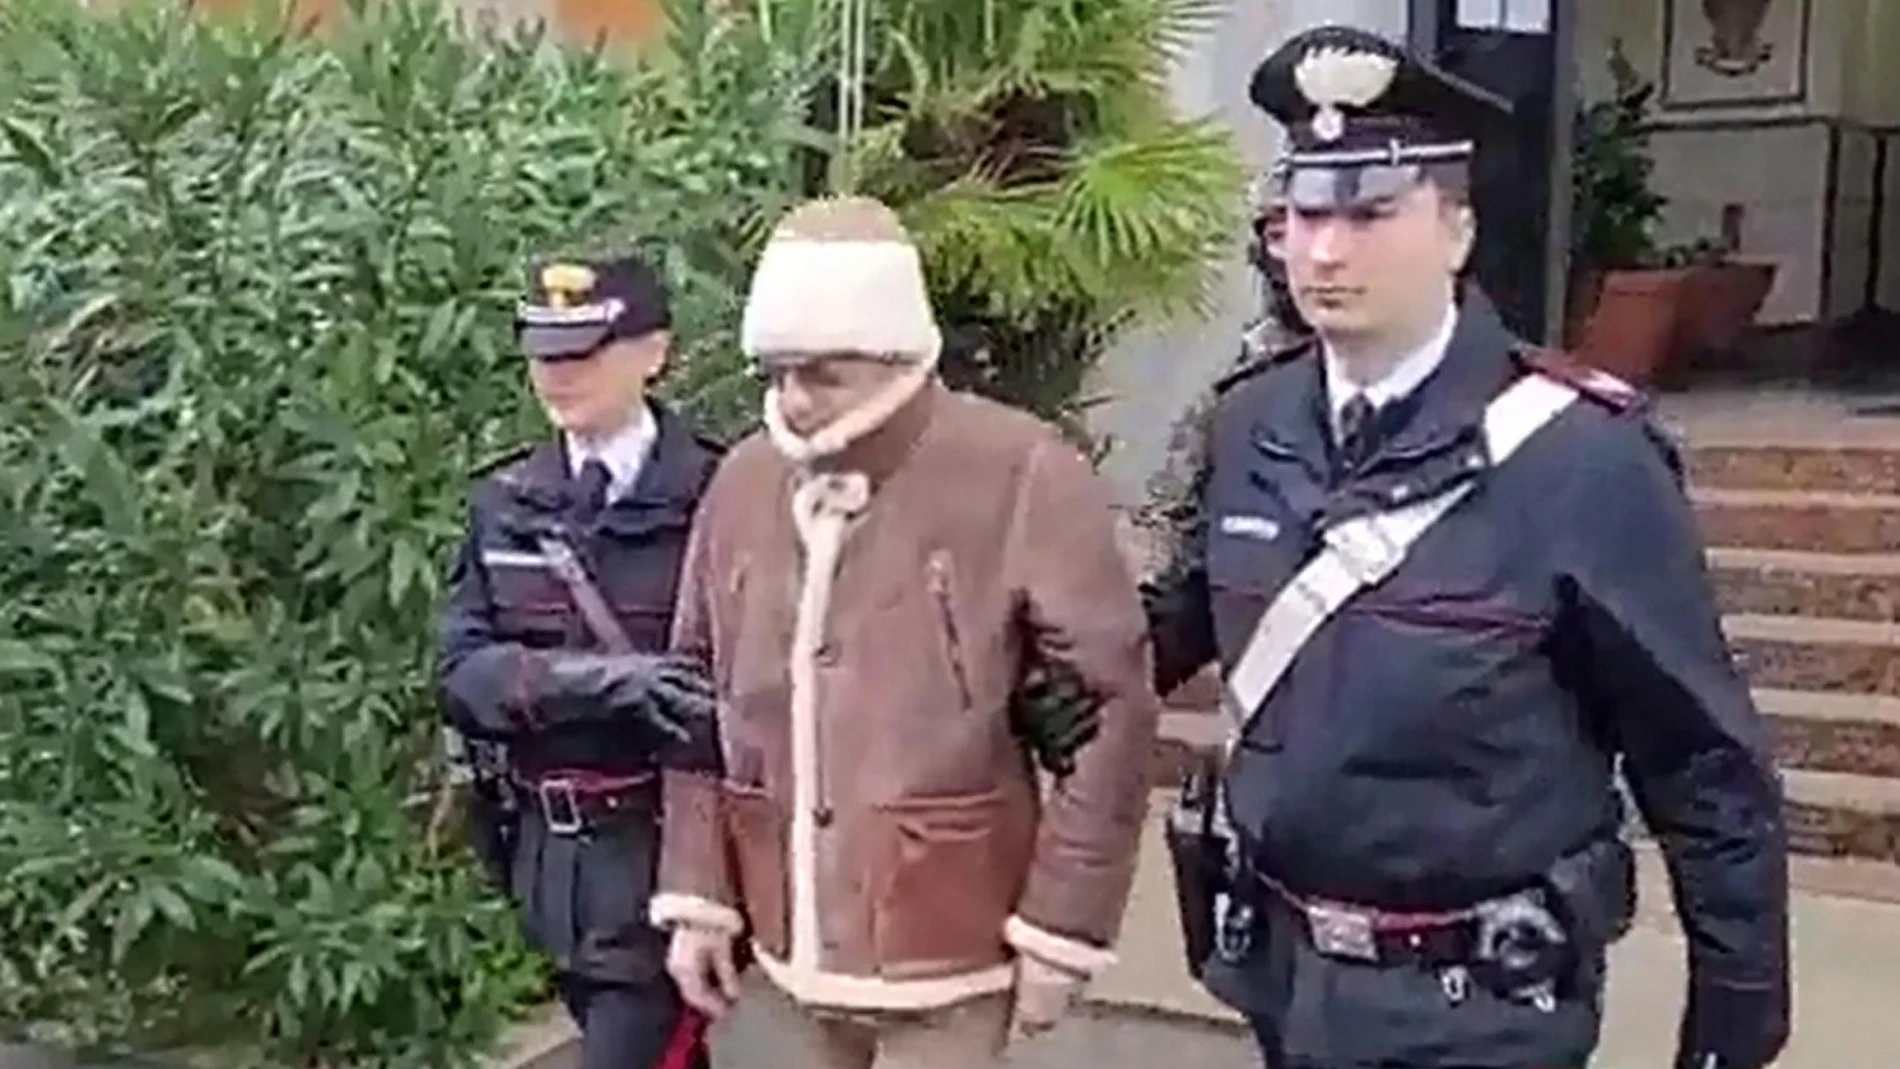 Messina Denaro, considerado el último padrino, heredero de la Cosa Nostra más despiadada y prófugo desde 1993, fue detenido el pasado lunes